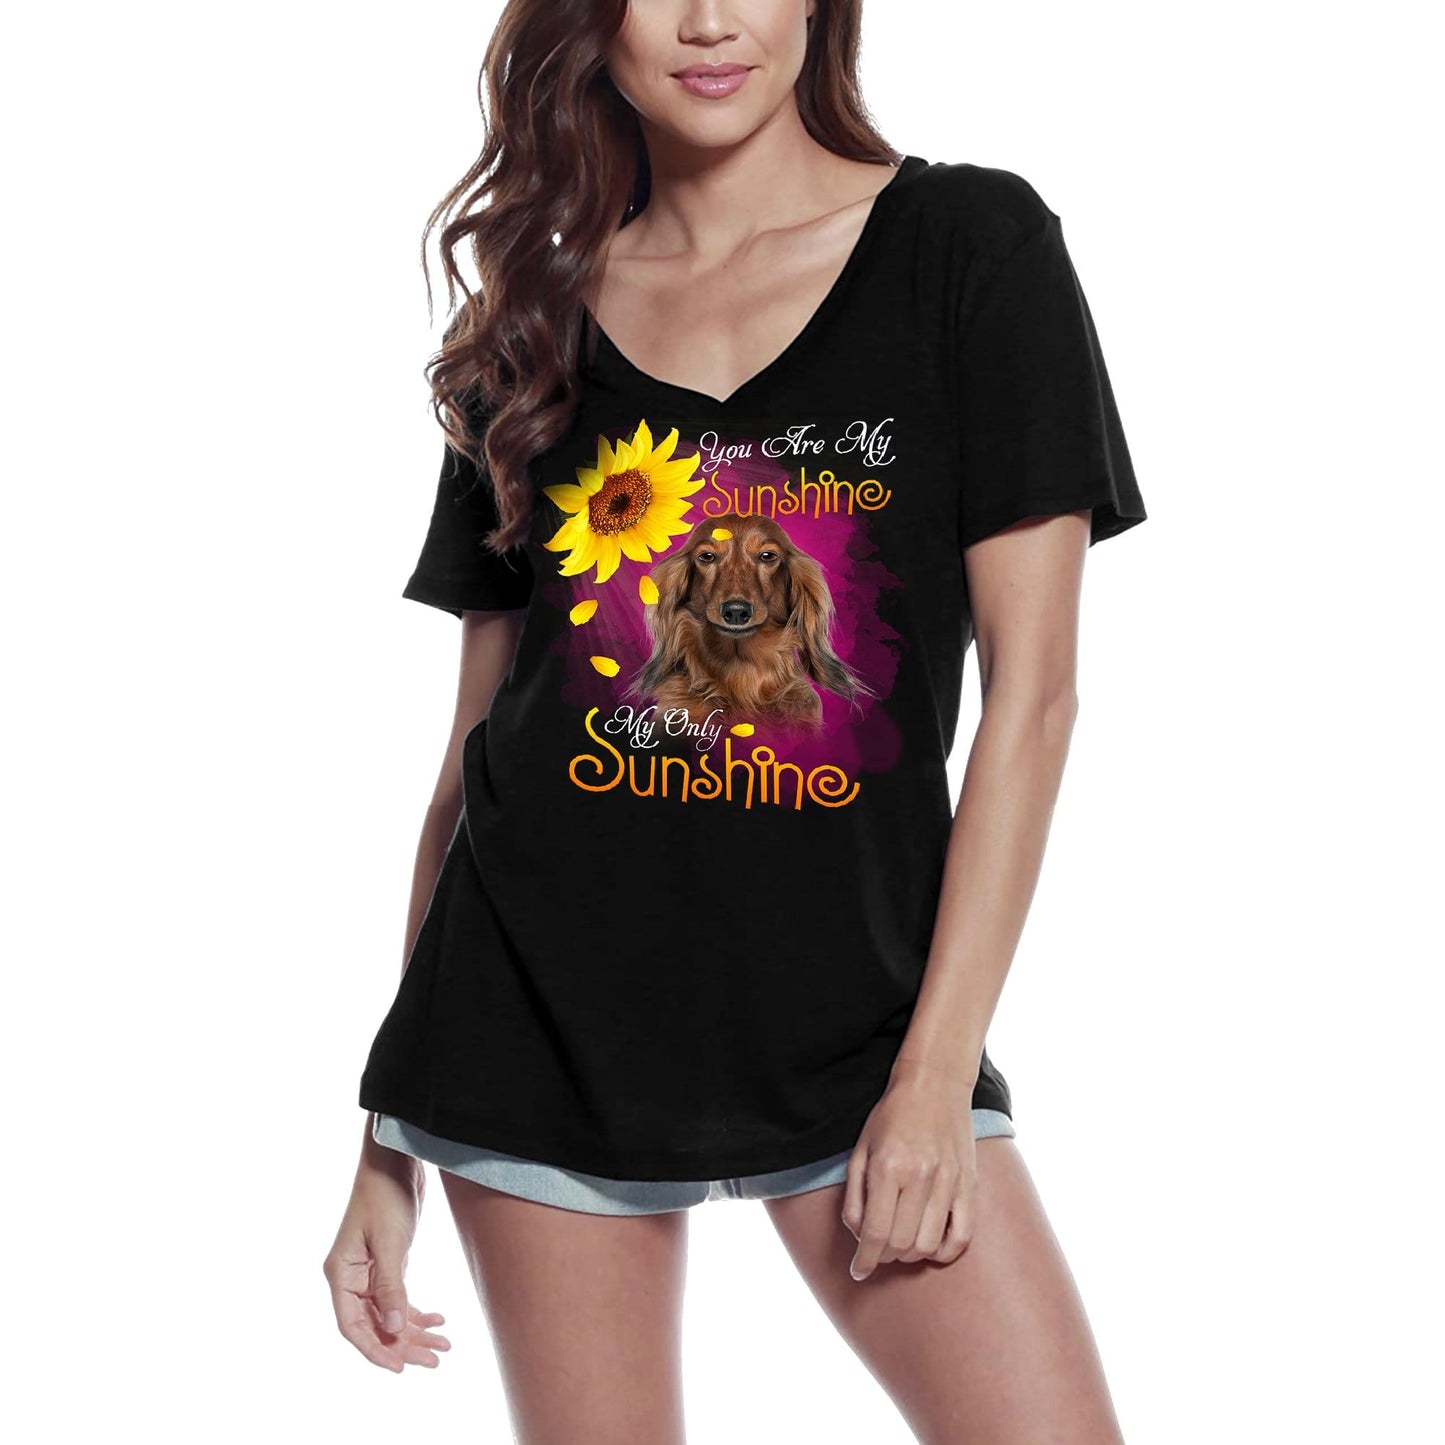 ULTRABASIC Women's V-Neck T-Shirt My Only Sunshine - Dachshund - Vintage Shirt